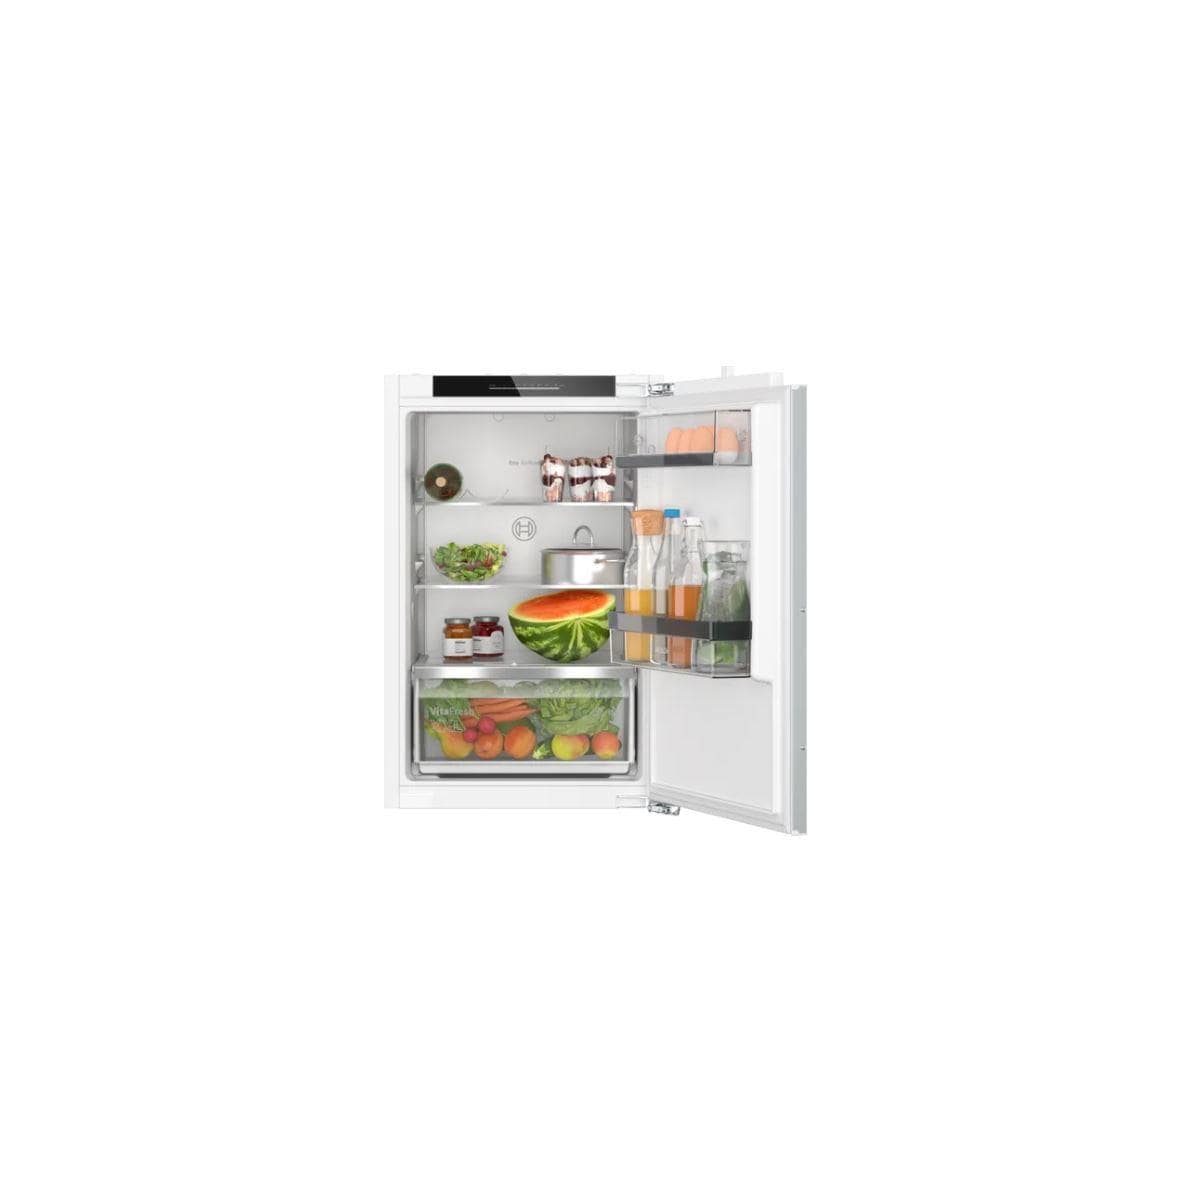 Bosch KIR21ADD1 Einbaukühlschrank ohne Gefrierfach, Nischenhöhe 88